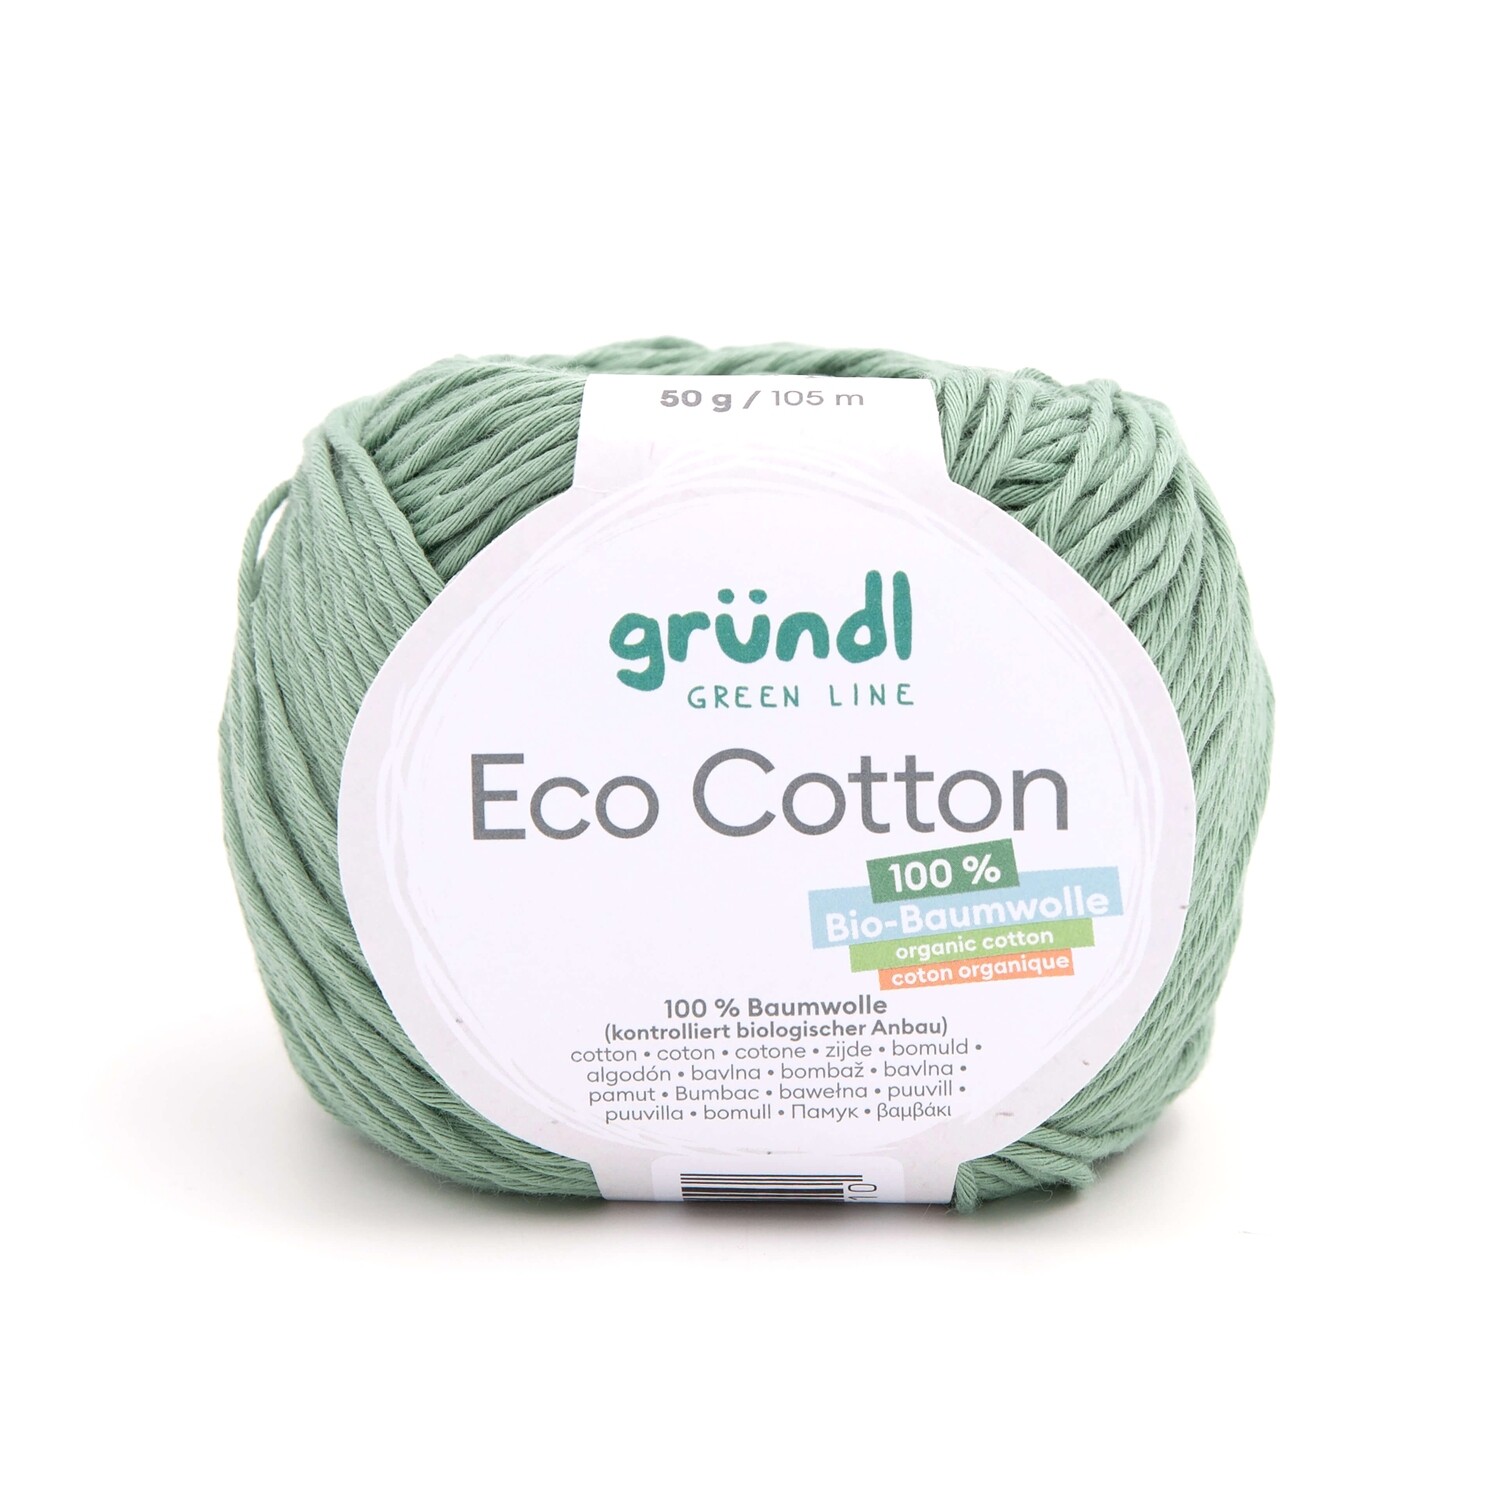 Gründl Eco Cotton (100% Bio Baumwolle) 50g